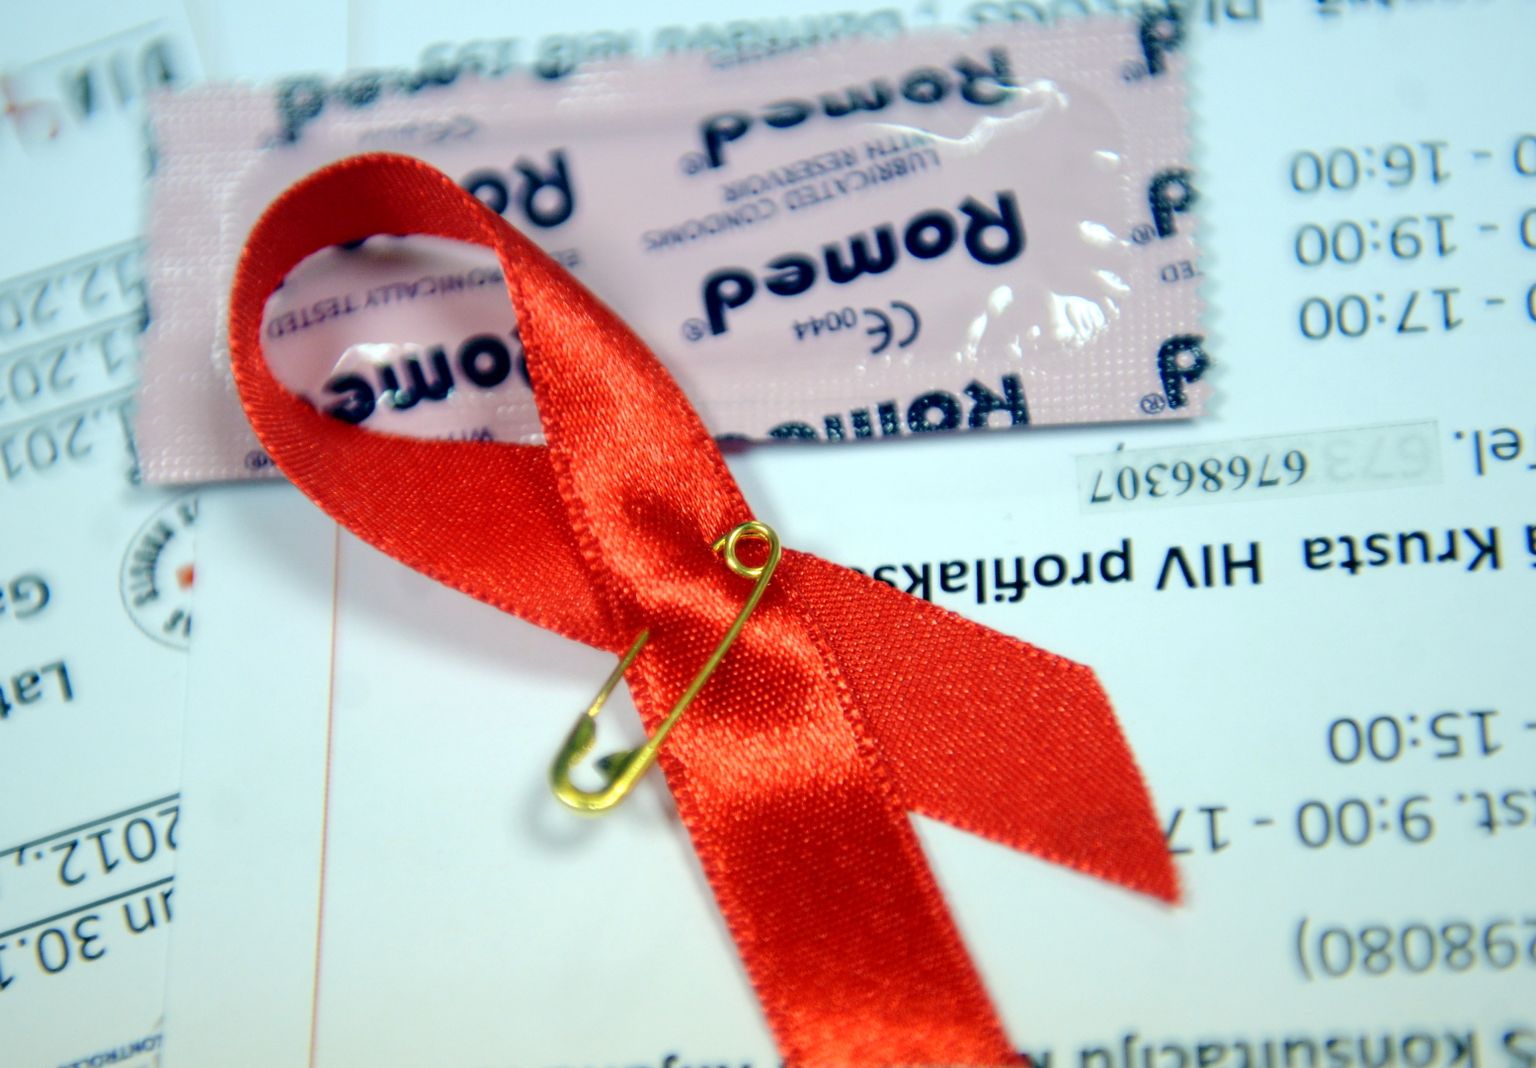 Sarkanā lentīte - visā pasaulē atpazīta zīme, kas simbolizē sapratni, līdzcietību un morālu atbalstu tiem, kas cieš no HIV/AIDS.